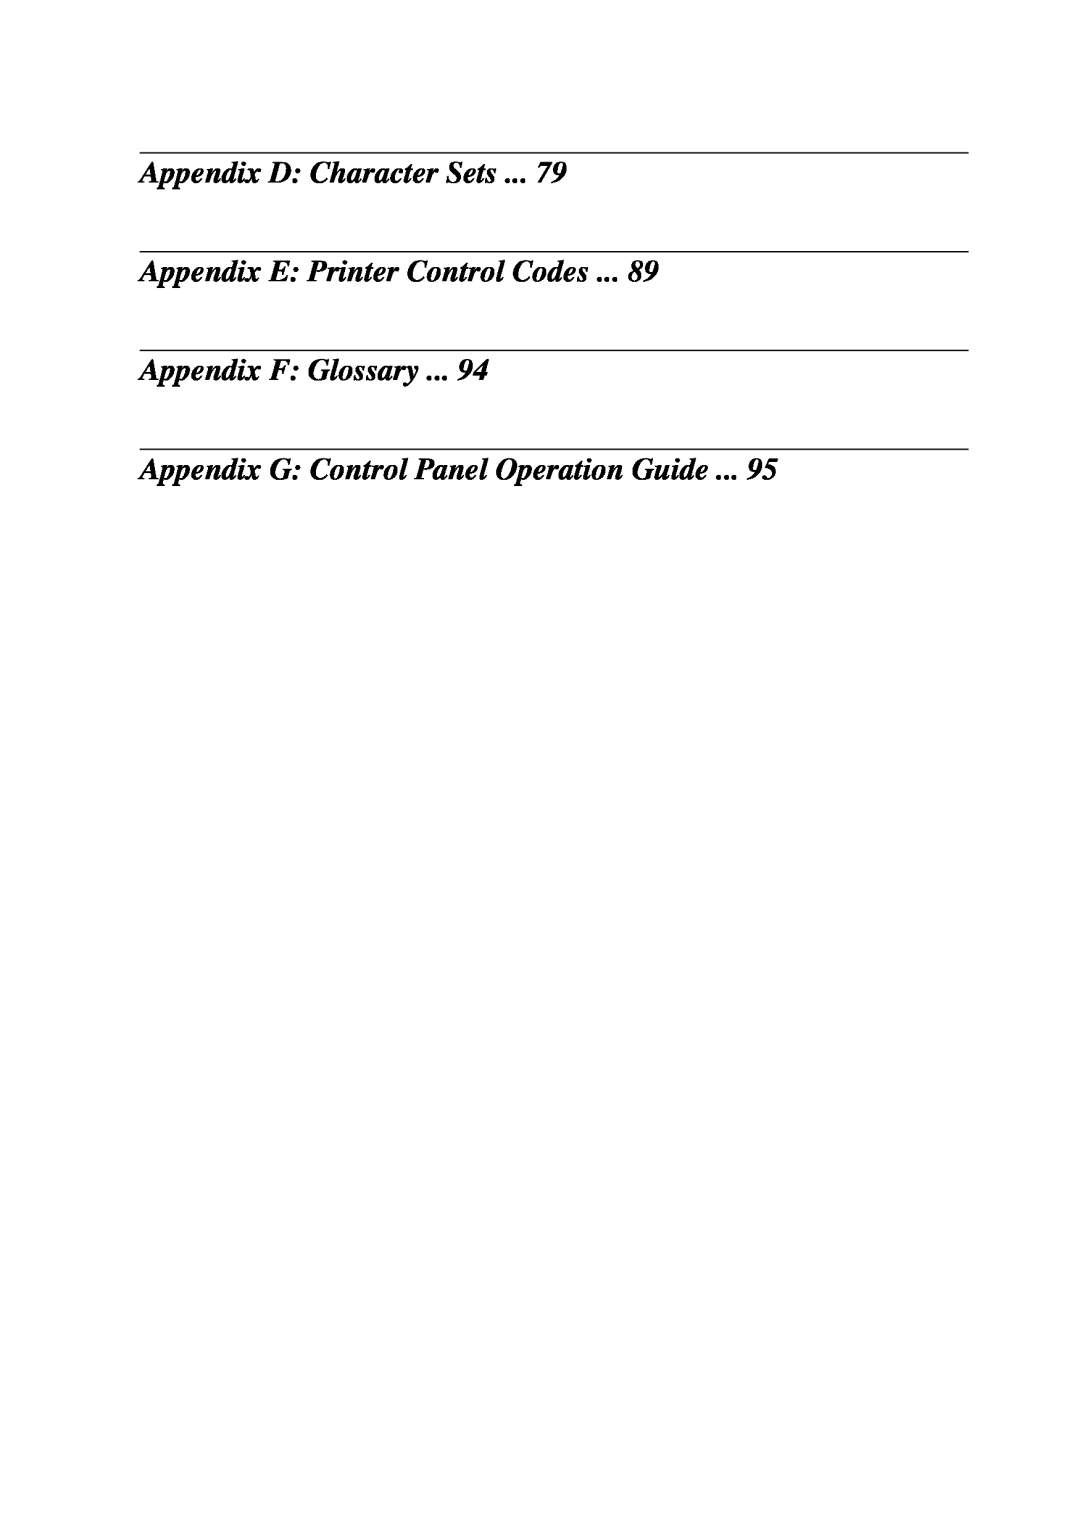 Star Micronics LC-7211 user manual Appendix D Character Sets Appendix E Printer Control Codes 